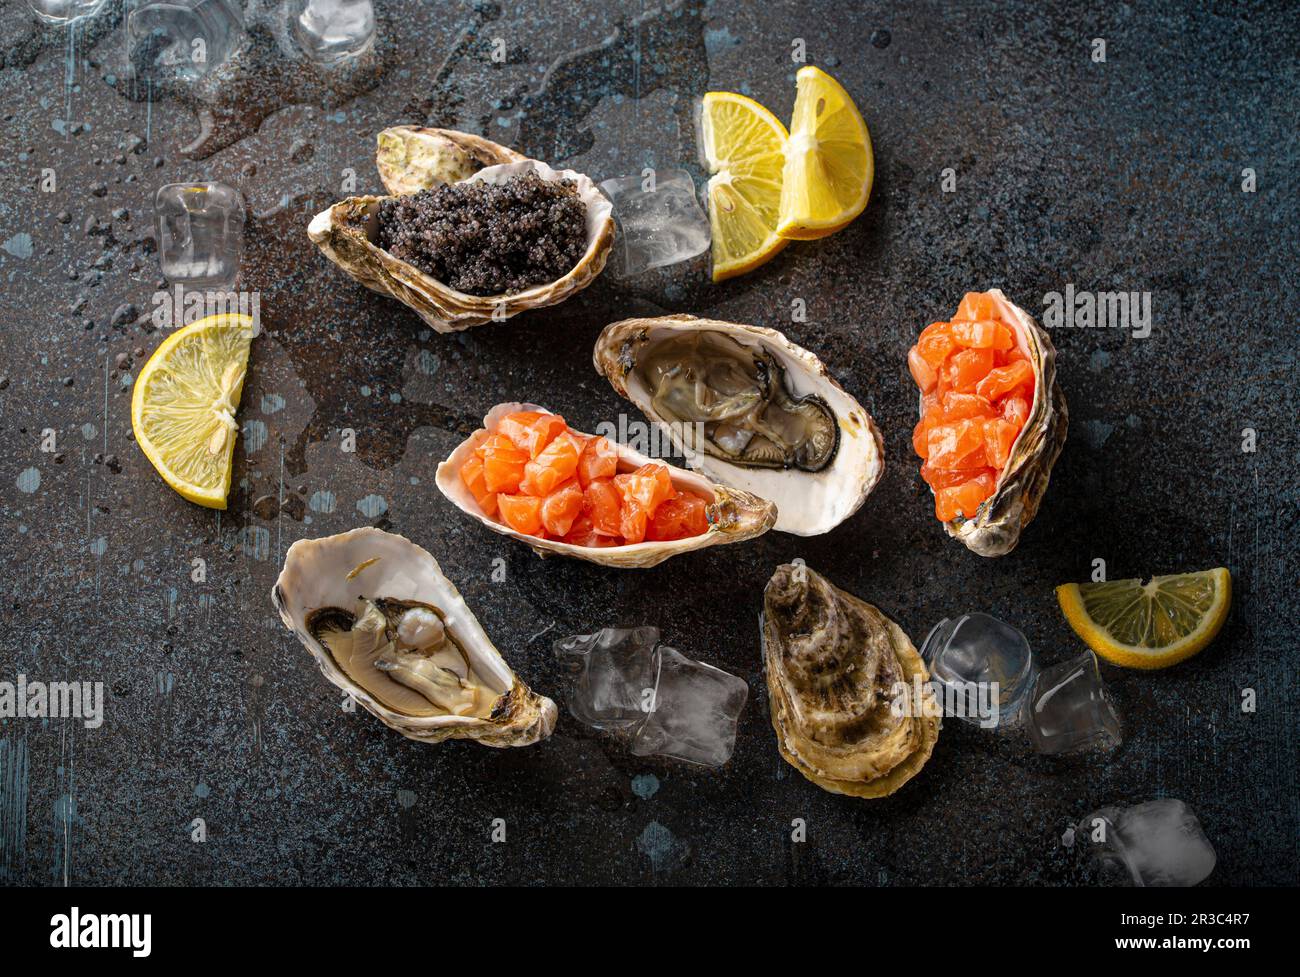 Entrées de fruits de mer et hors-d'œuvre : huîtres fraîches ouvertes, caviar noir et tartare de saumon Banque D'Images